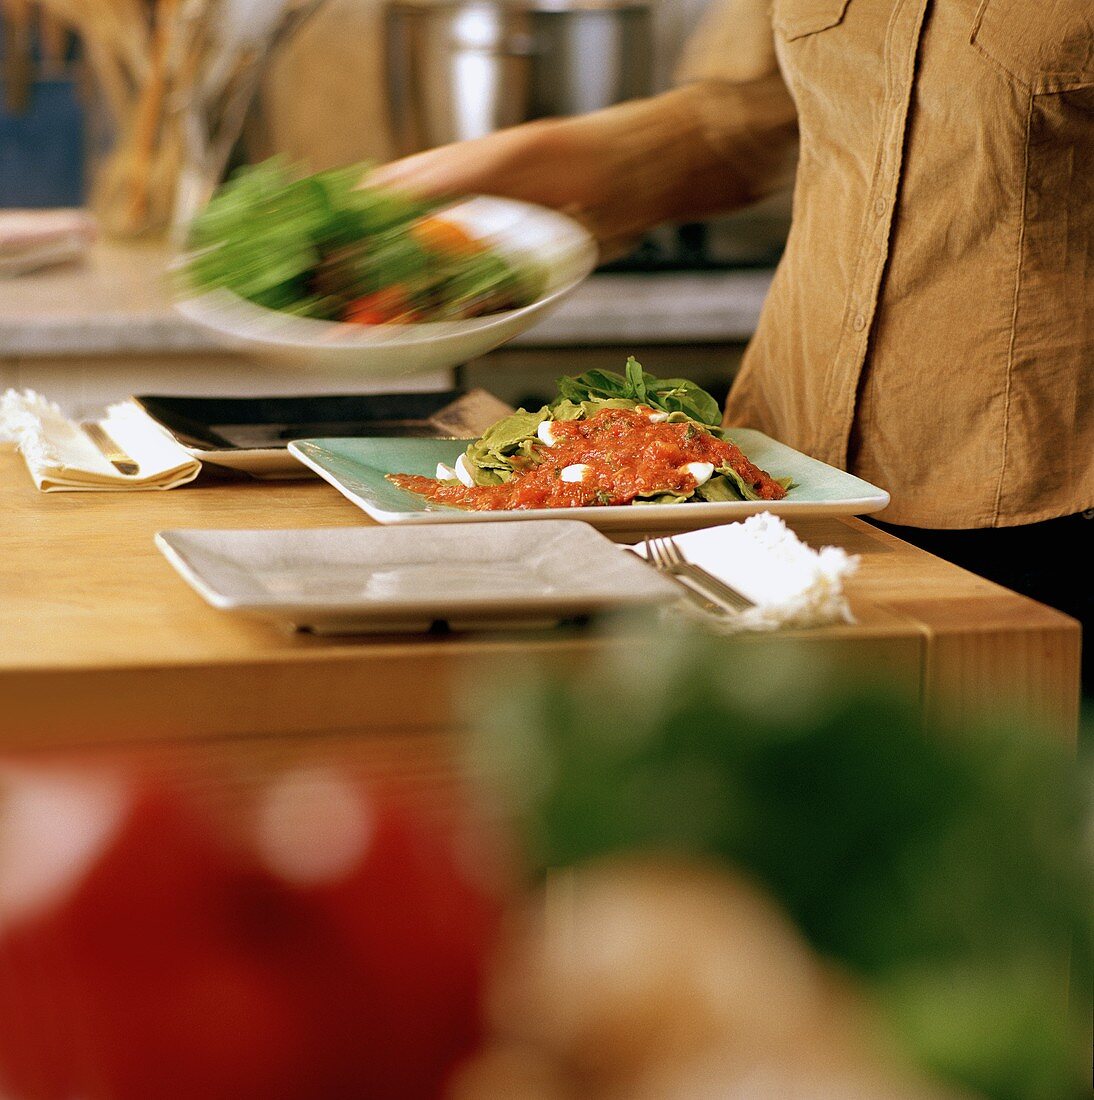 Salatschüssel zu Nudelgericht auf Tisch stellen